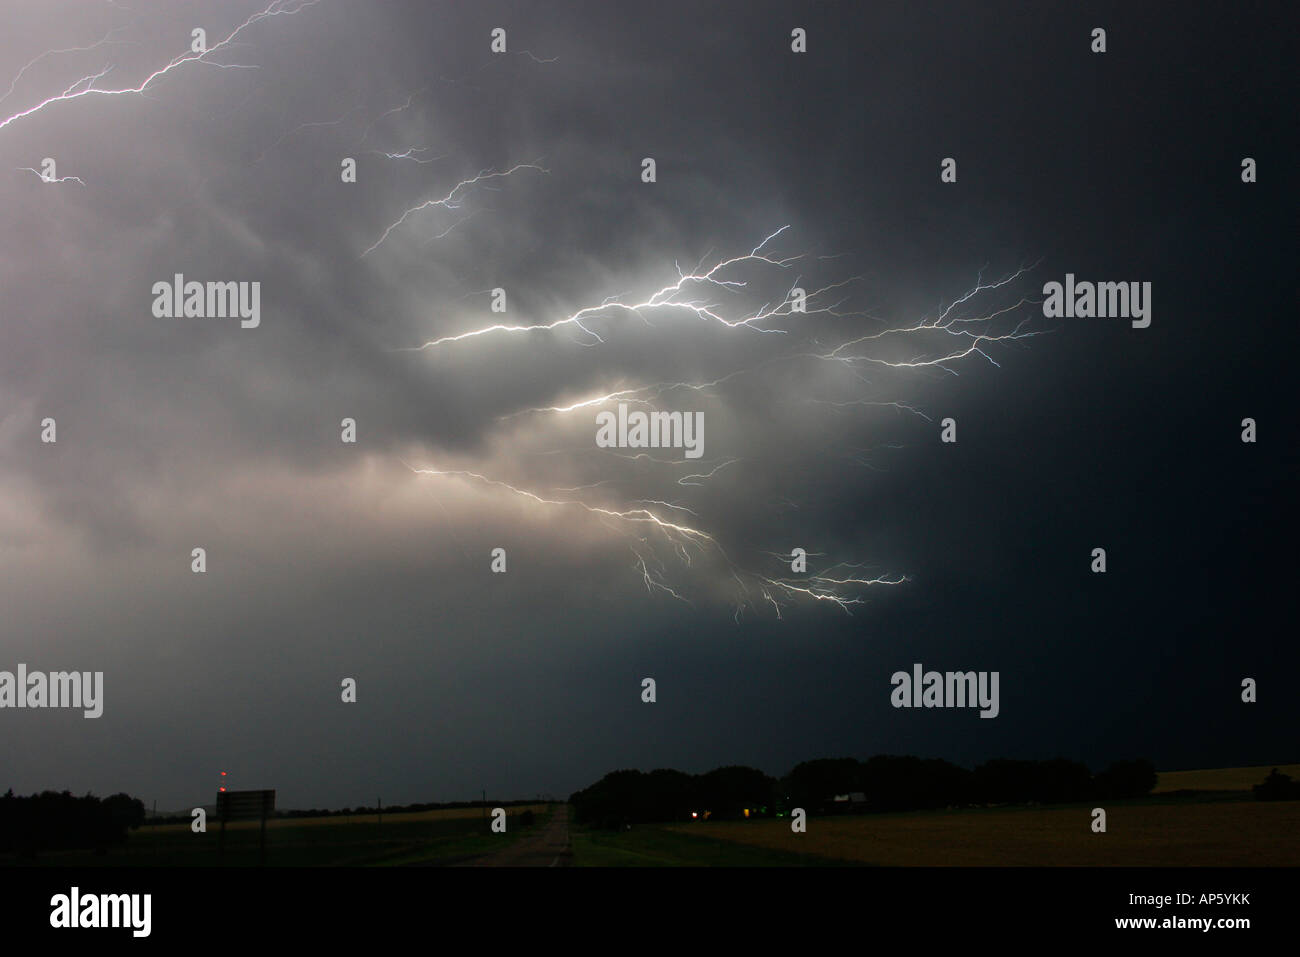 ©David Howells 2007 Tel +1 305 778 1846 Fork lightning during a severe thunderstorm in Kansas. Stock Photo